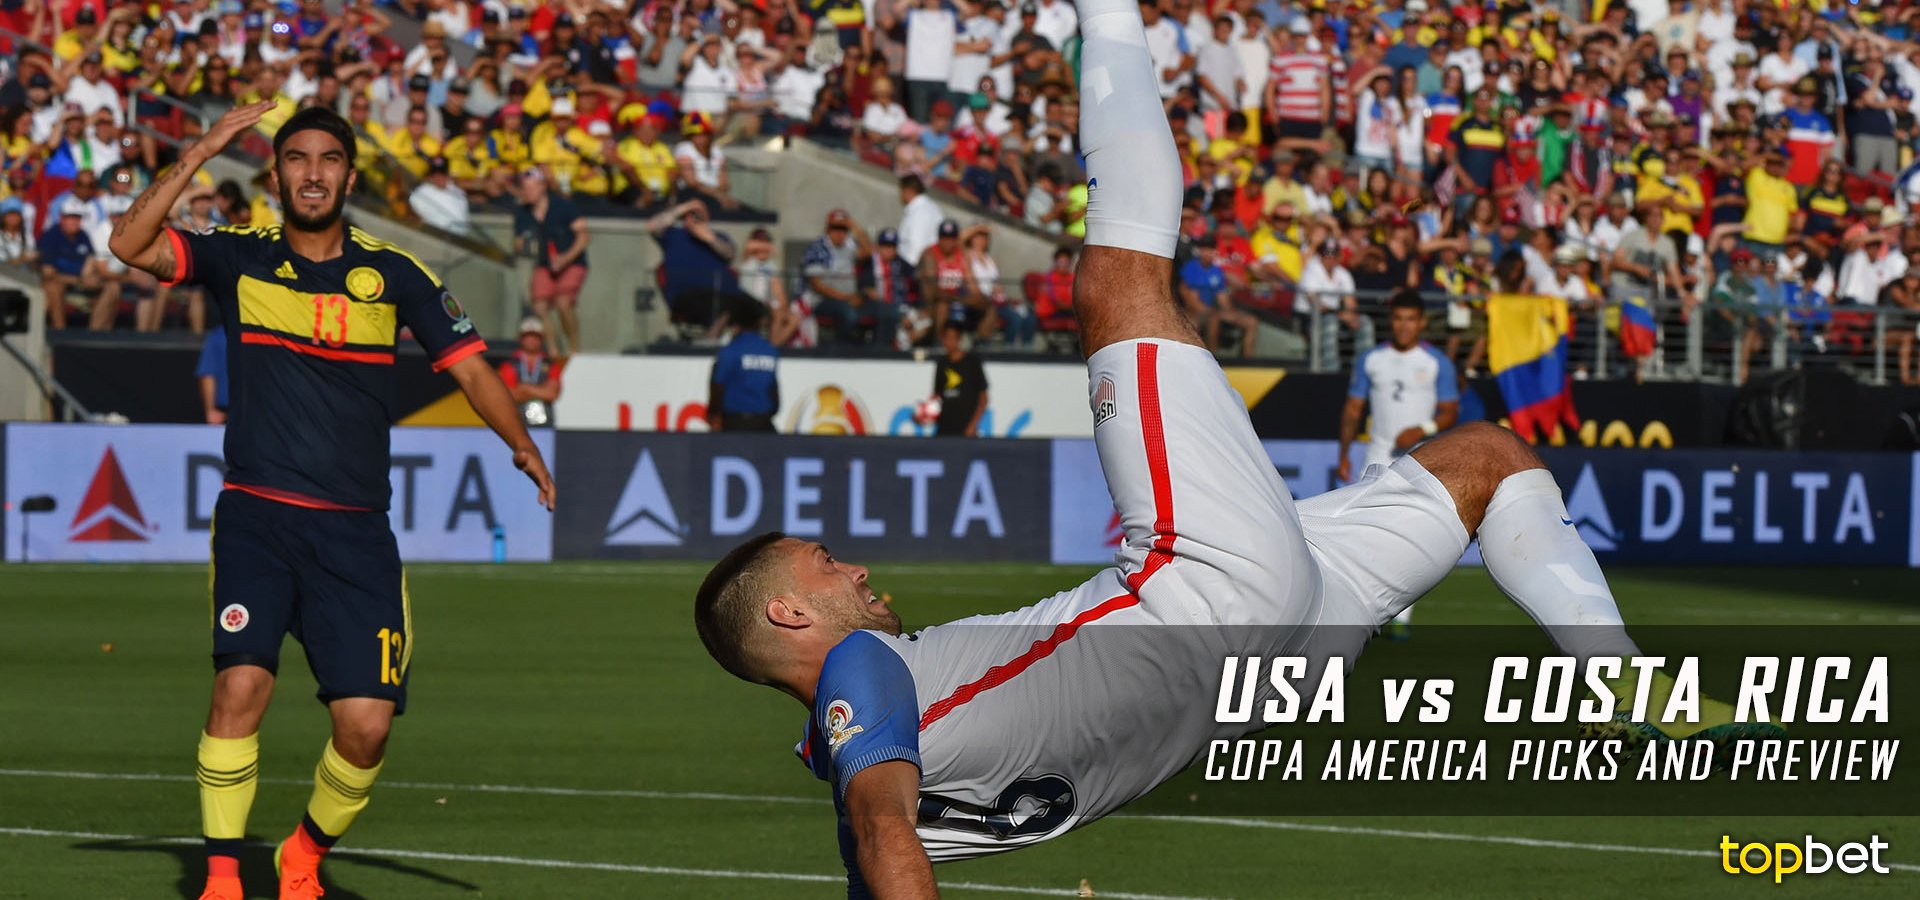 USA vs Costa Rica 2016 Copa America Group A Predictions